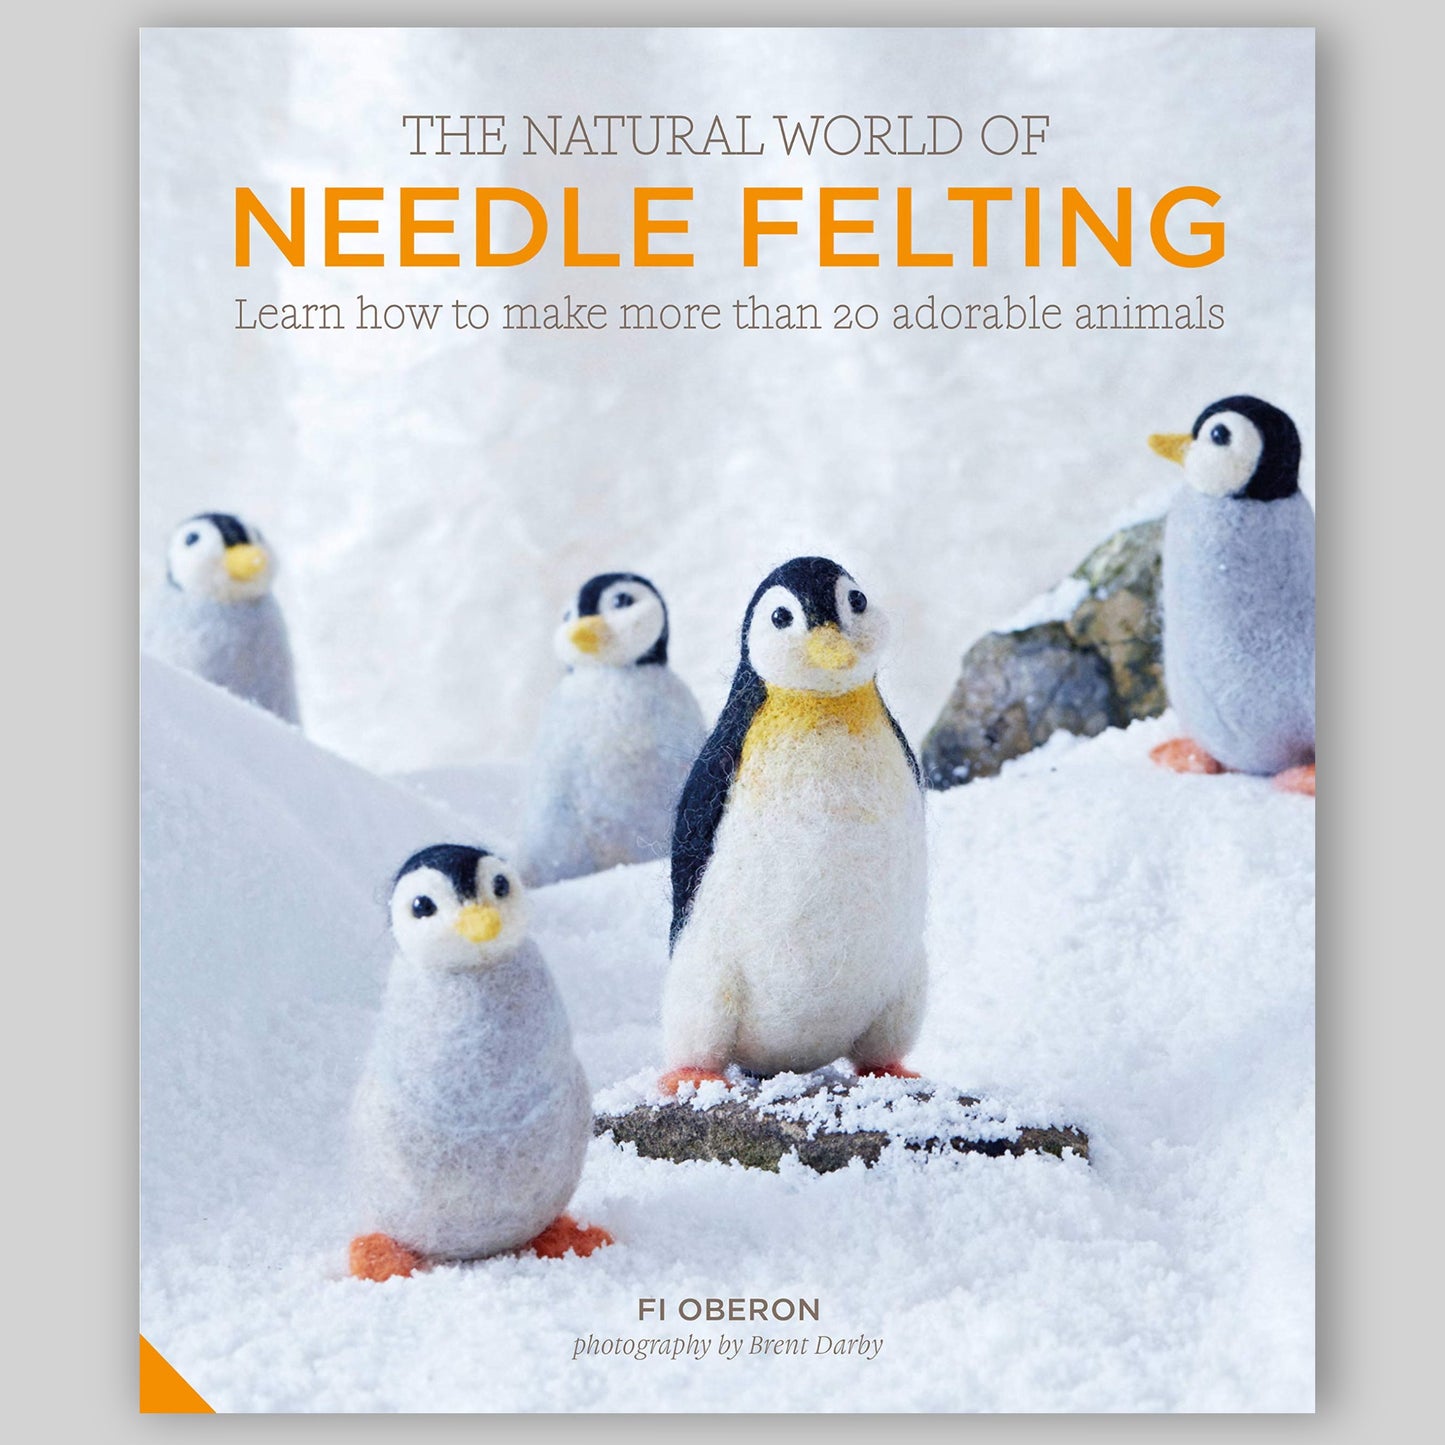 The Natural World of Needle Felting